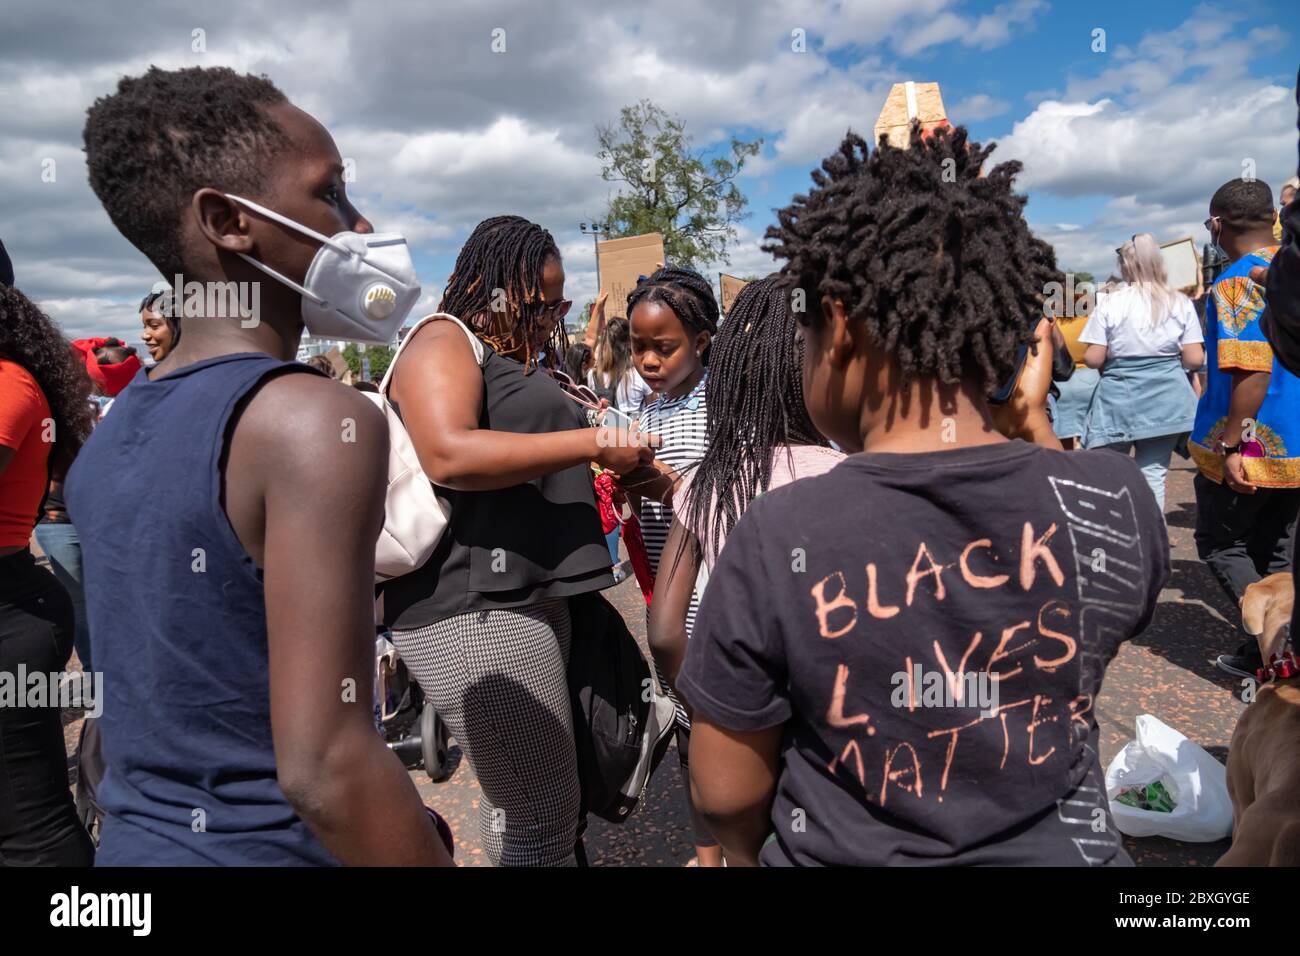 Glasgow, Escocia, Reino Unido. 7 de junio de 2020. Los manifestantes participan en el mitin Black Lives Matter, en Glasgow Green, protestando contra la muerte de George Floyd, que murió bajo custodia policial el 25 de mayo en Minneapolis, Minnesota, EE.UU. Crédito: Skully/Alamy Live News Foto de stock